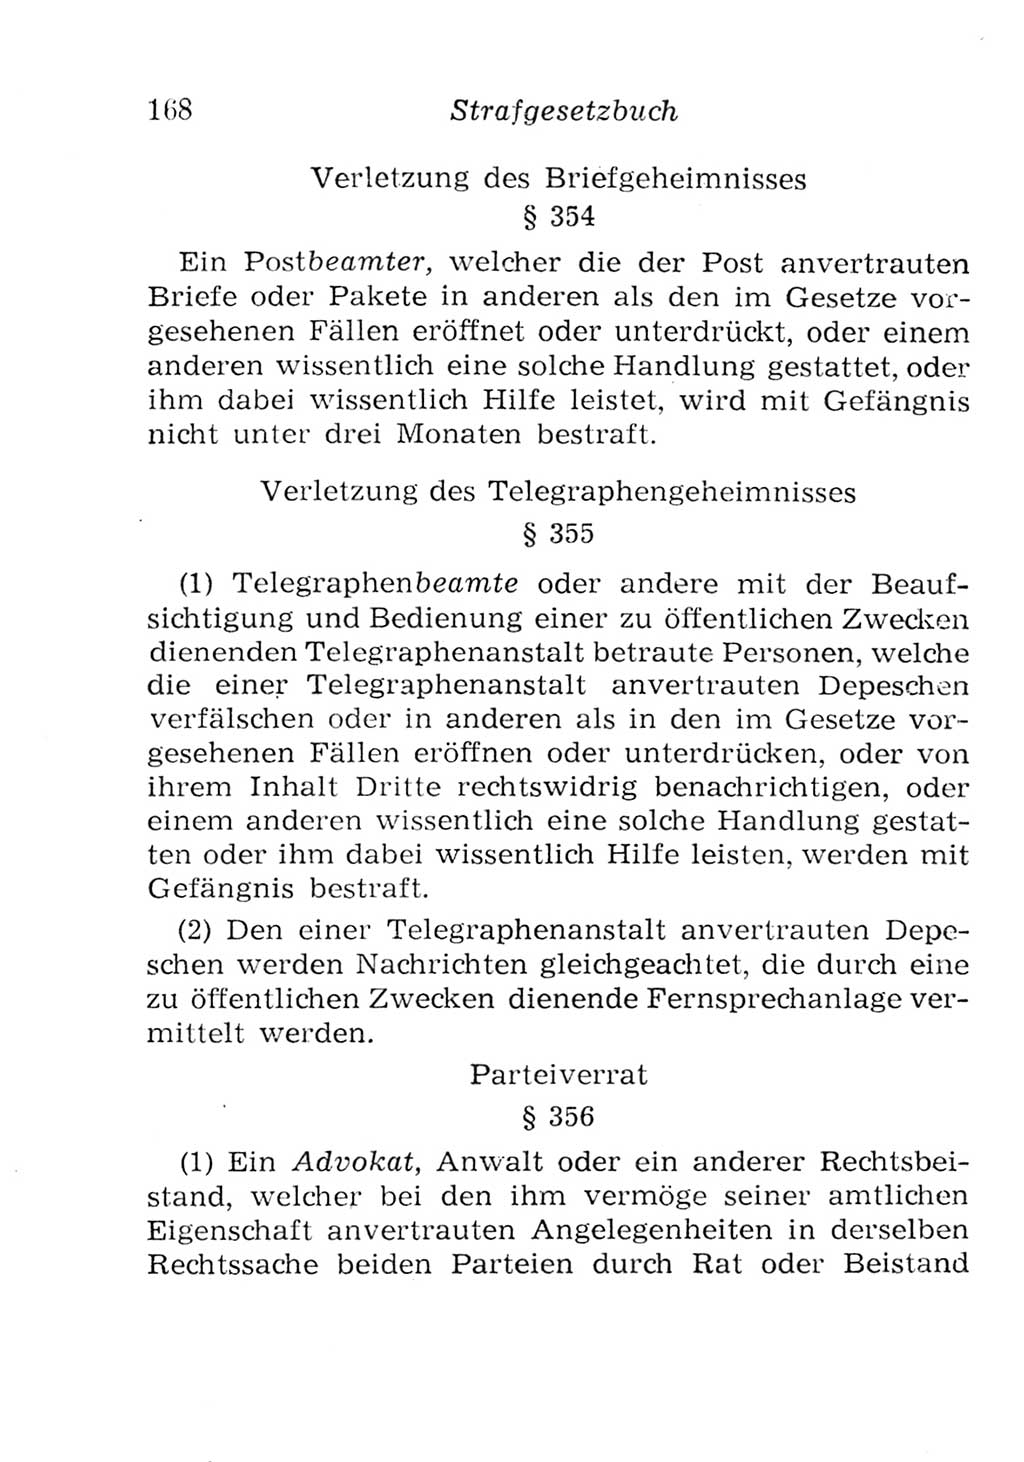 Strafgesetzbuch (StGB) und andere Strafgesetze [Deutsche Demokratische Republik (DDR)] 1957, Seite 168 (StGB Strafges. DDR 1957, S. 168)